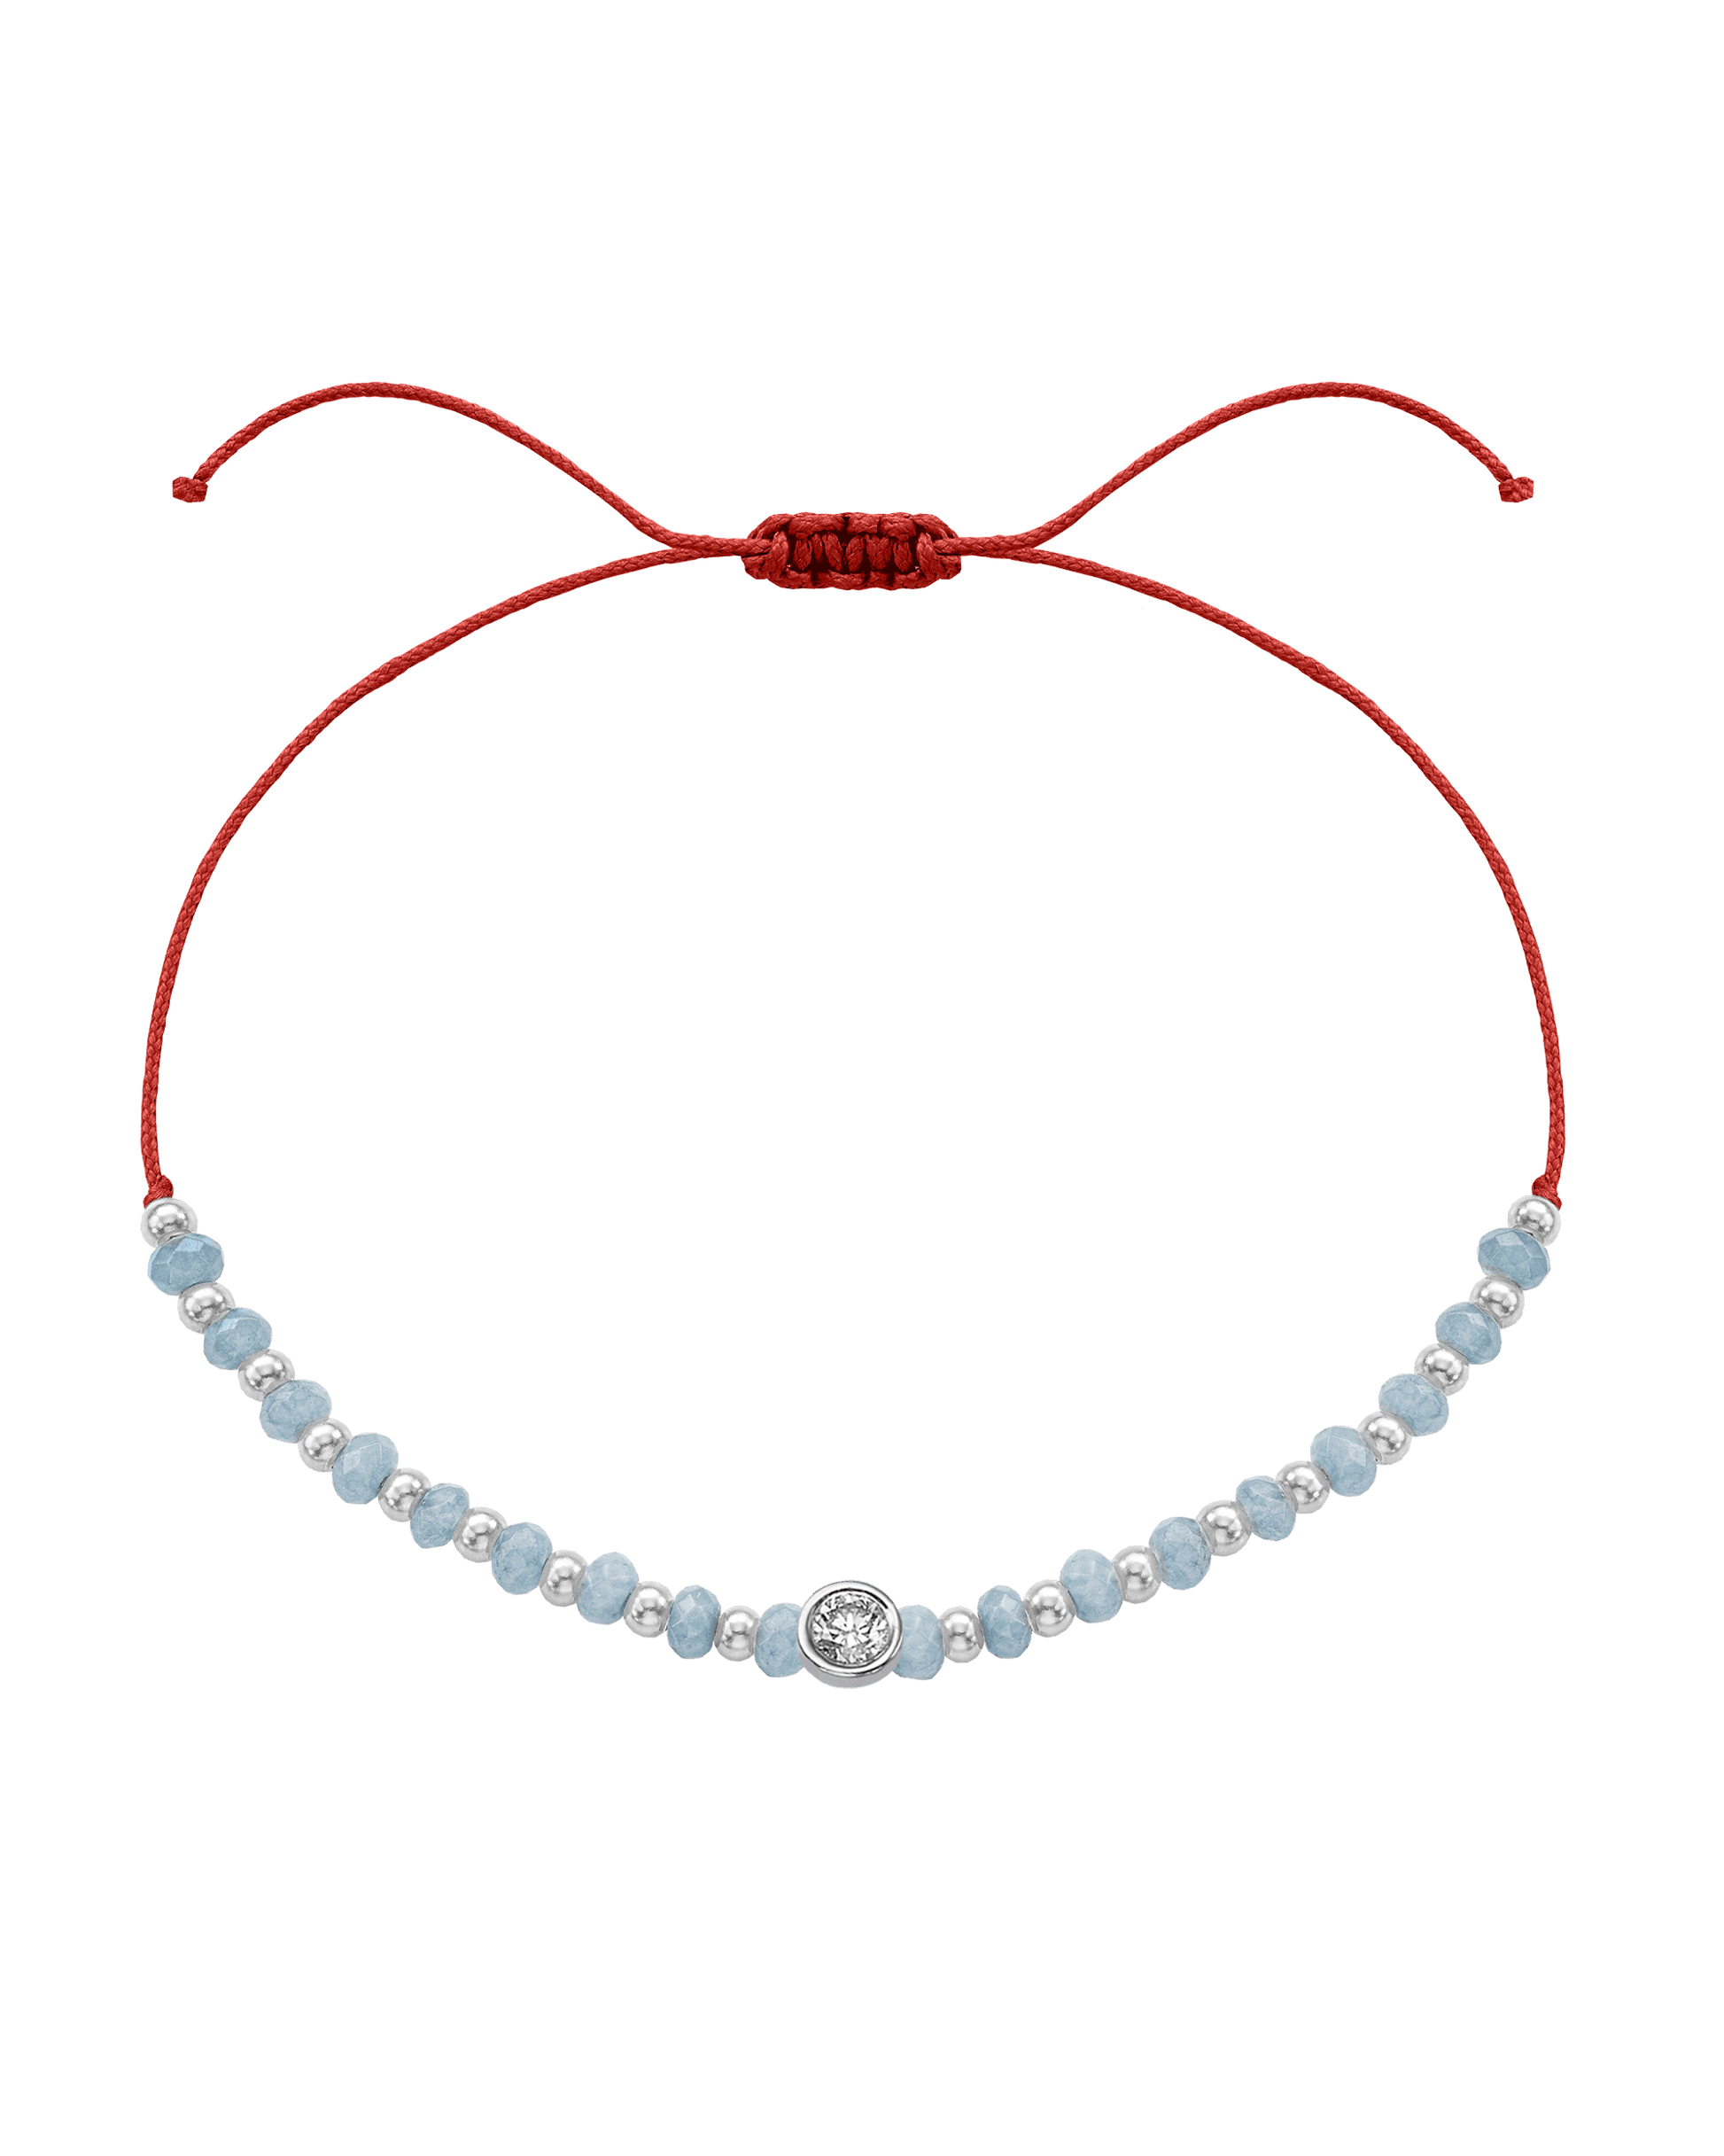 Celestite Gemstone String of Love Bracelet for Mindfulness - 14K White Gold Bracelets 14K Solid Gold Red Large: 0.1ct 